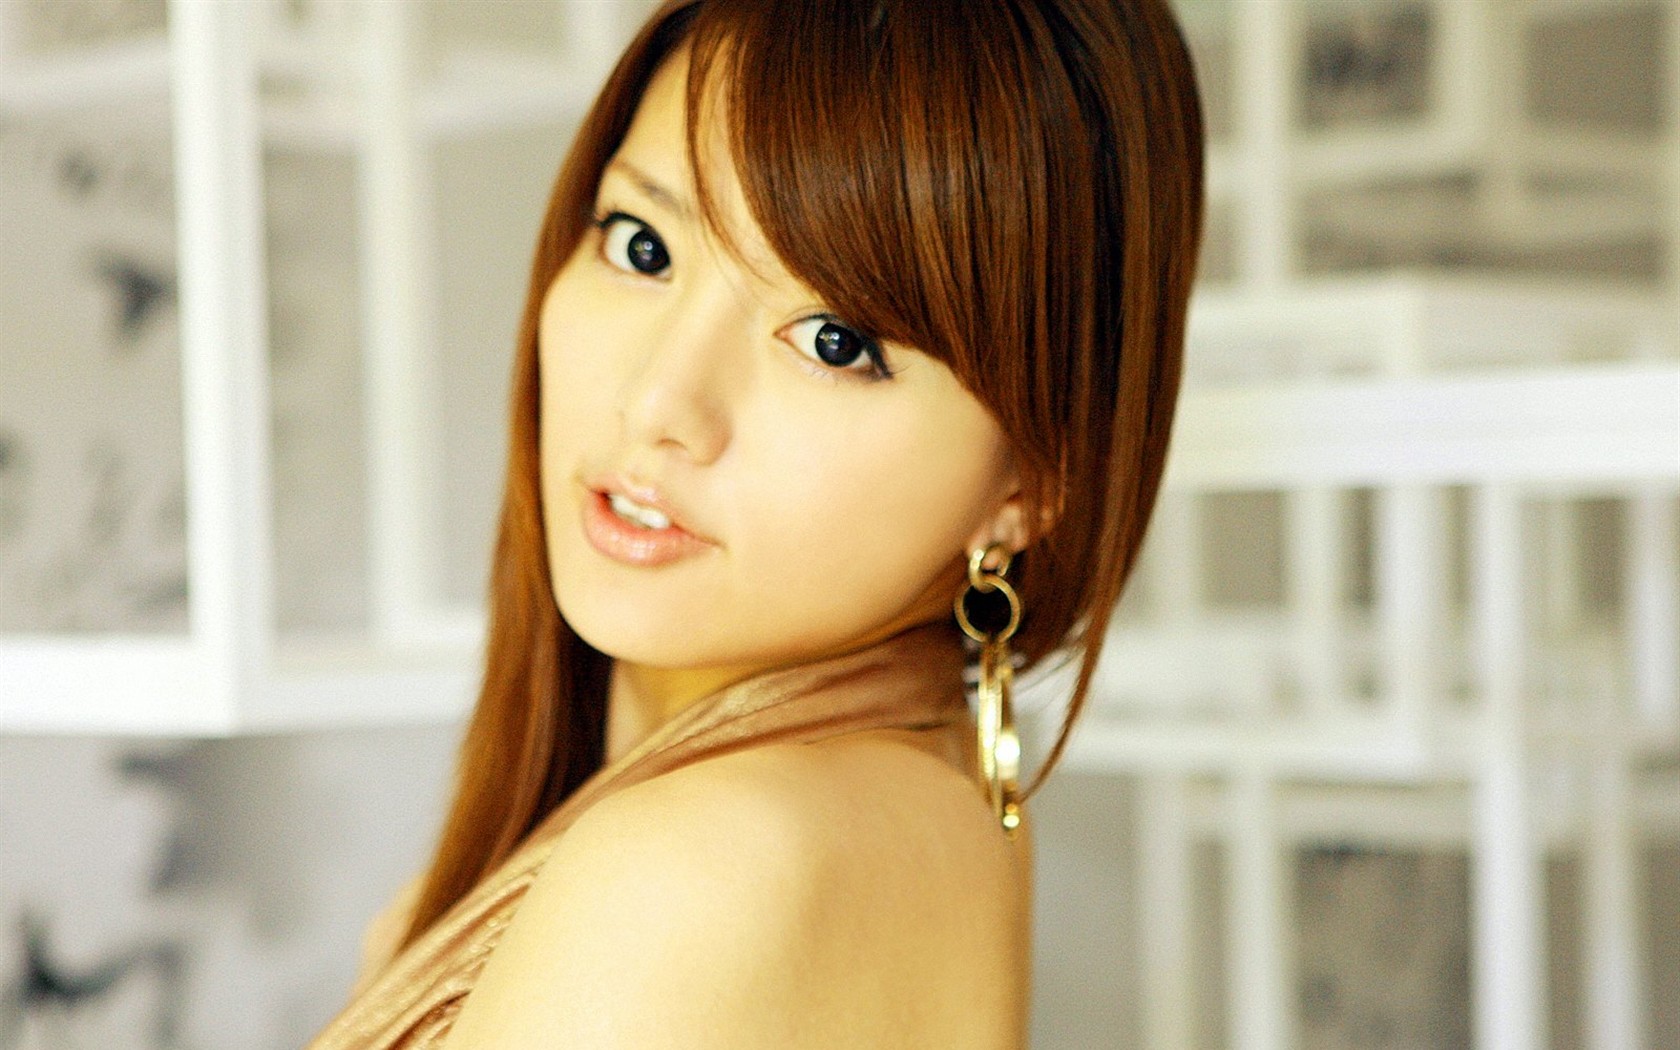 Alan Japan sexy actress photo #1 - 1680x1050